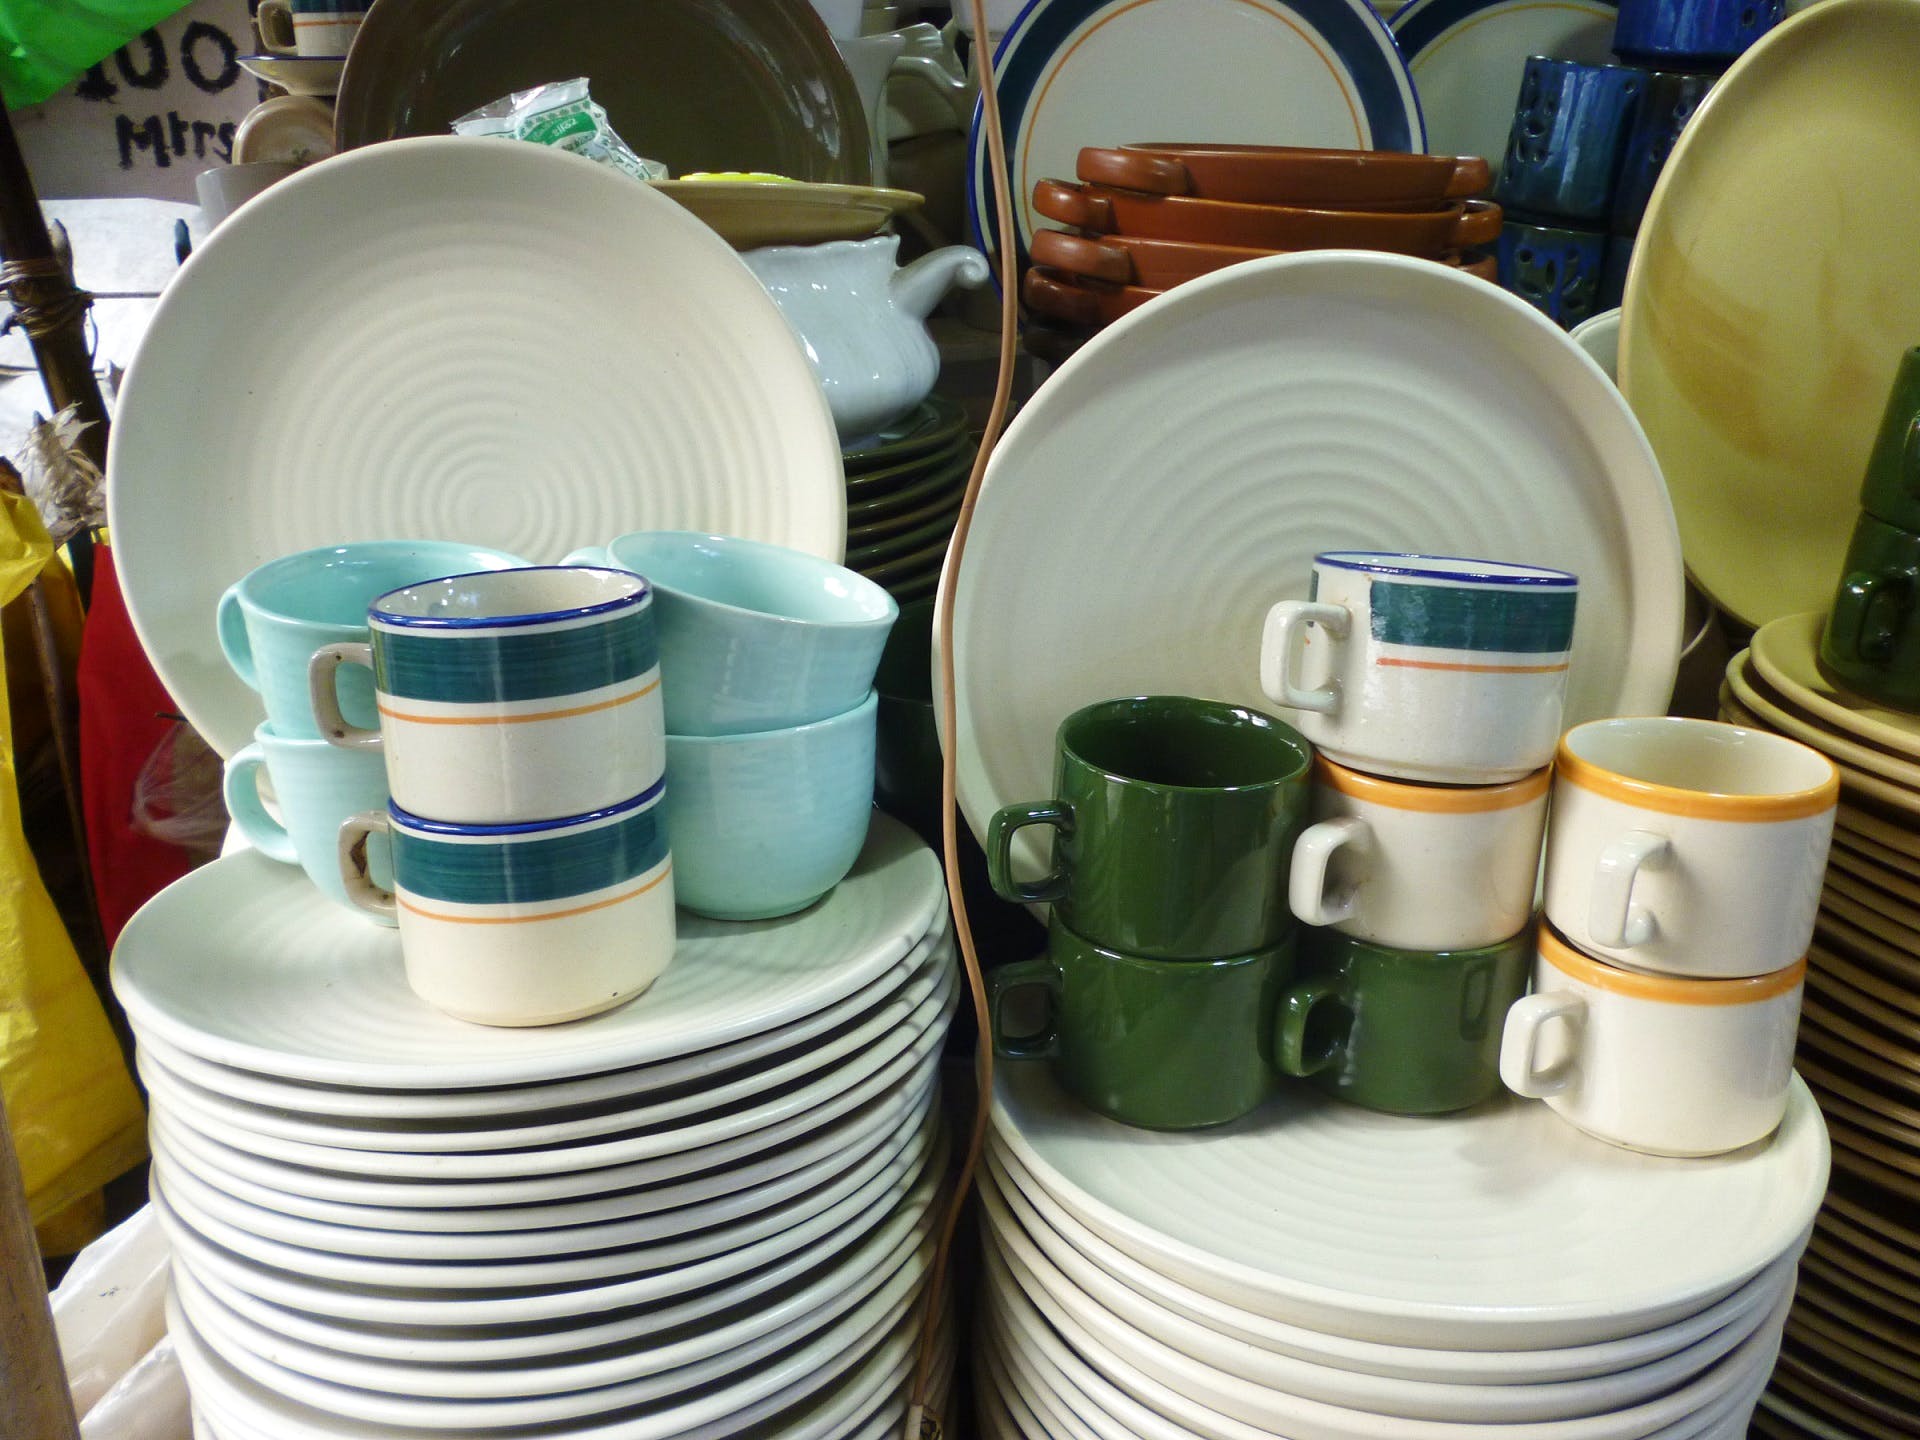 Dishware,Tableware,Dinnerware set,Porcelain,Vacuum flask,Plate,Plastic